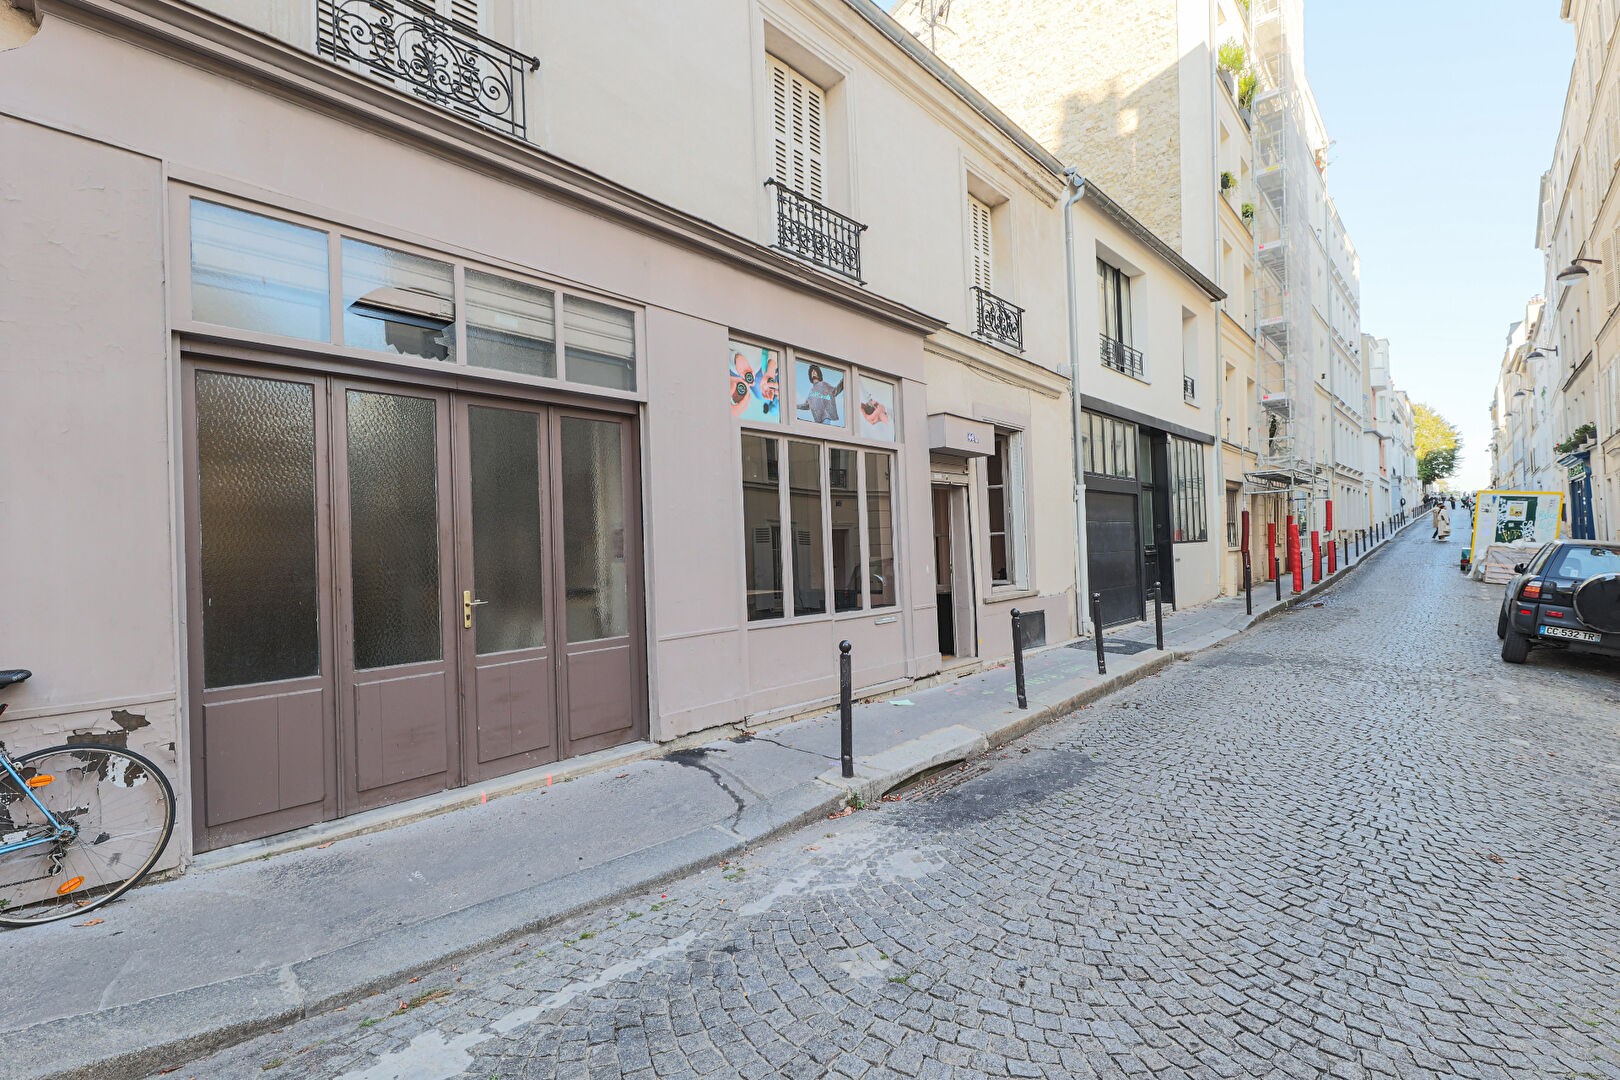 Vente Garage / Parking à Paris Butte-Montmartre 18e arrondissement 5 pièces